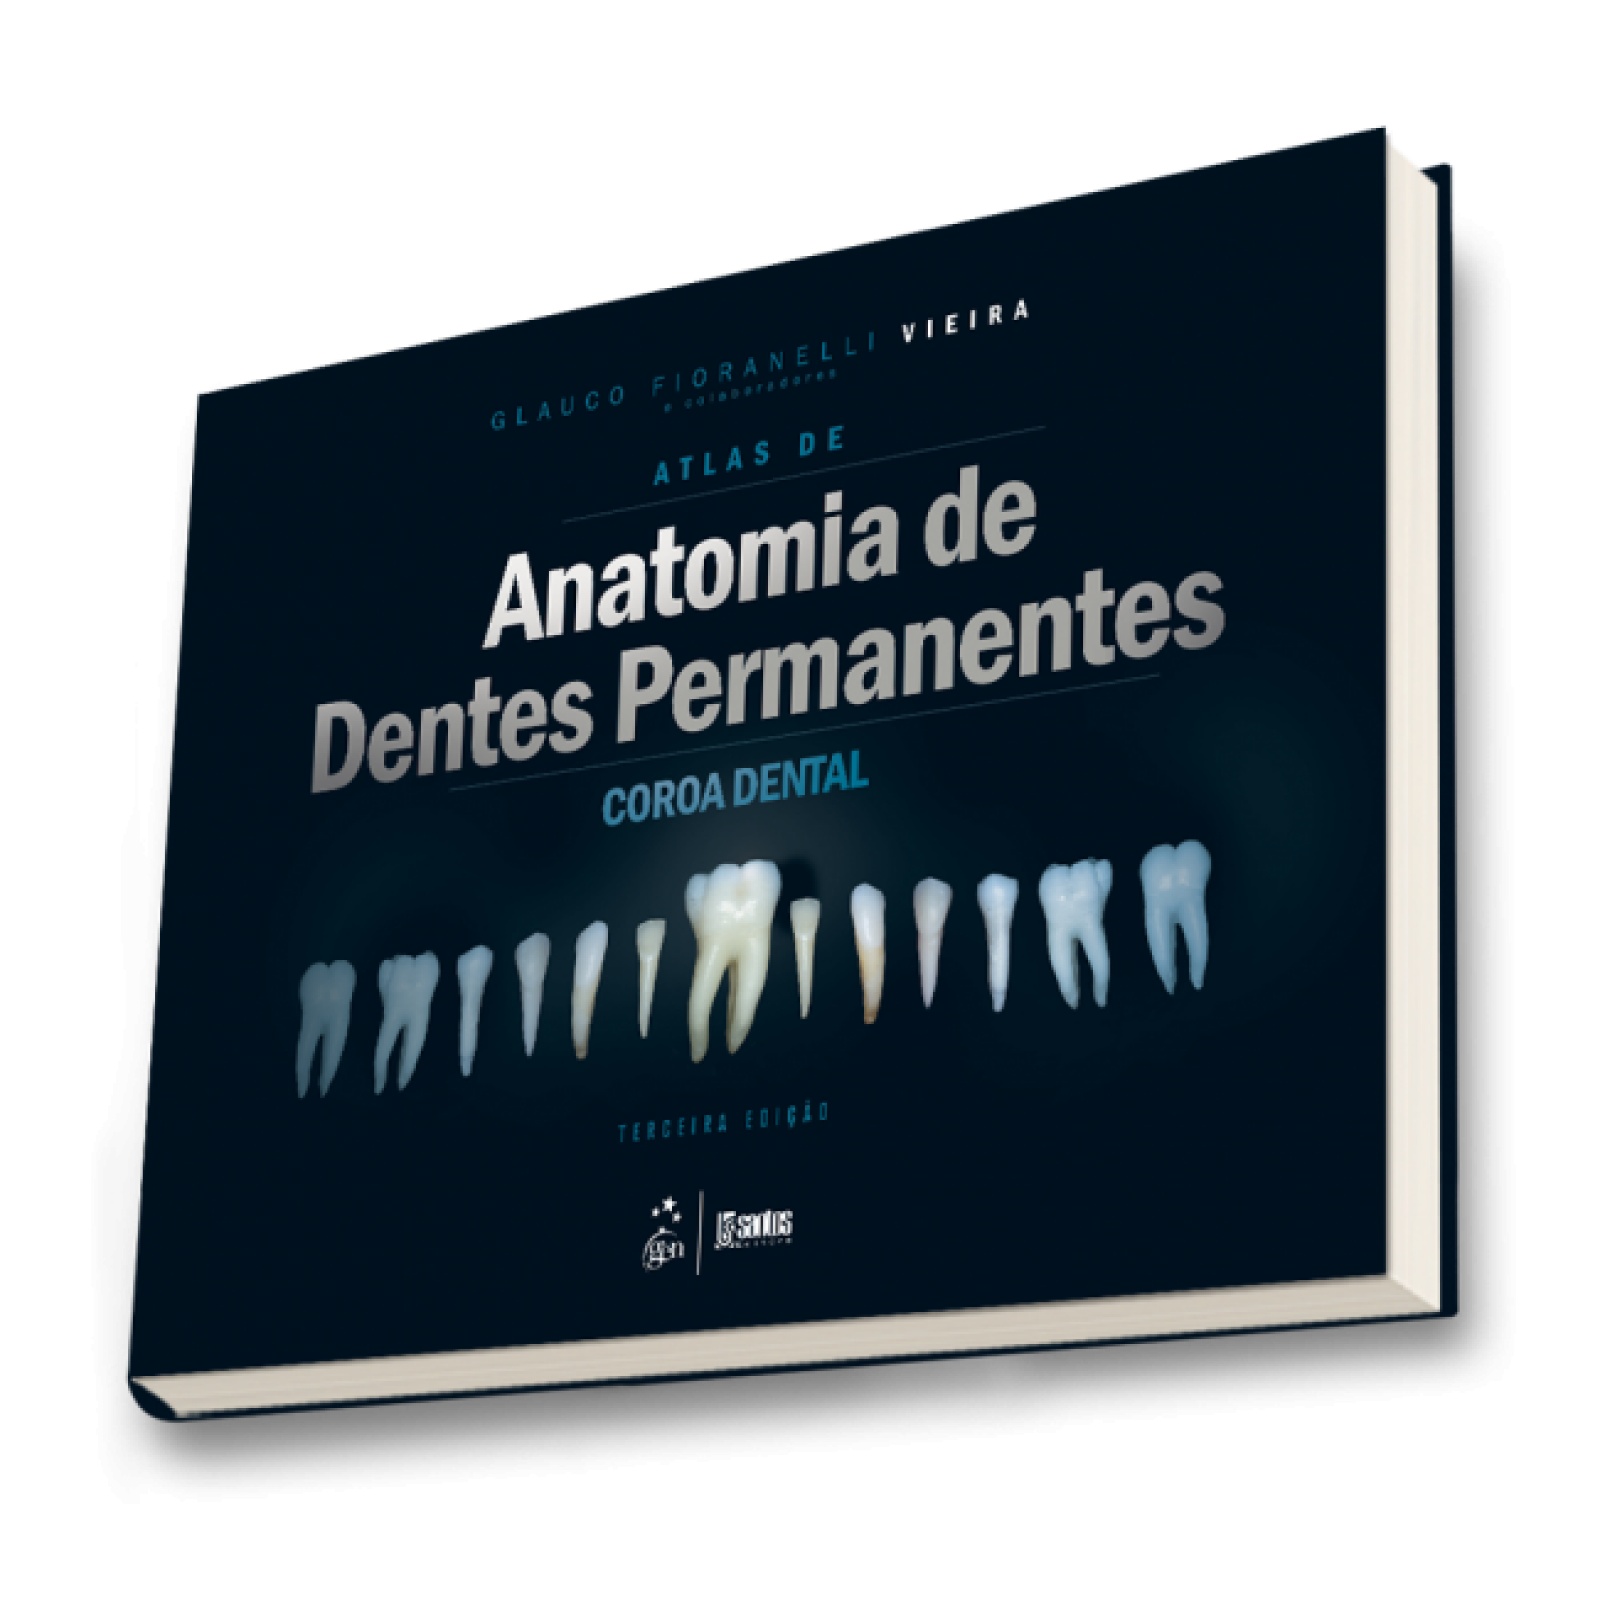 Atlas De Anatomia De Dentes Permanentes - Coroa Dental